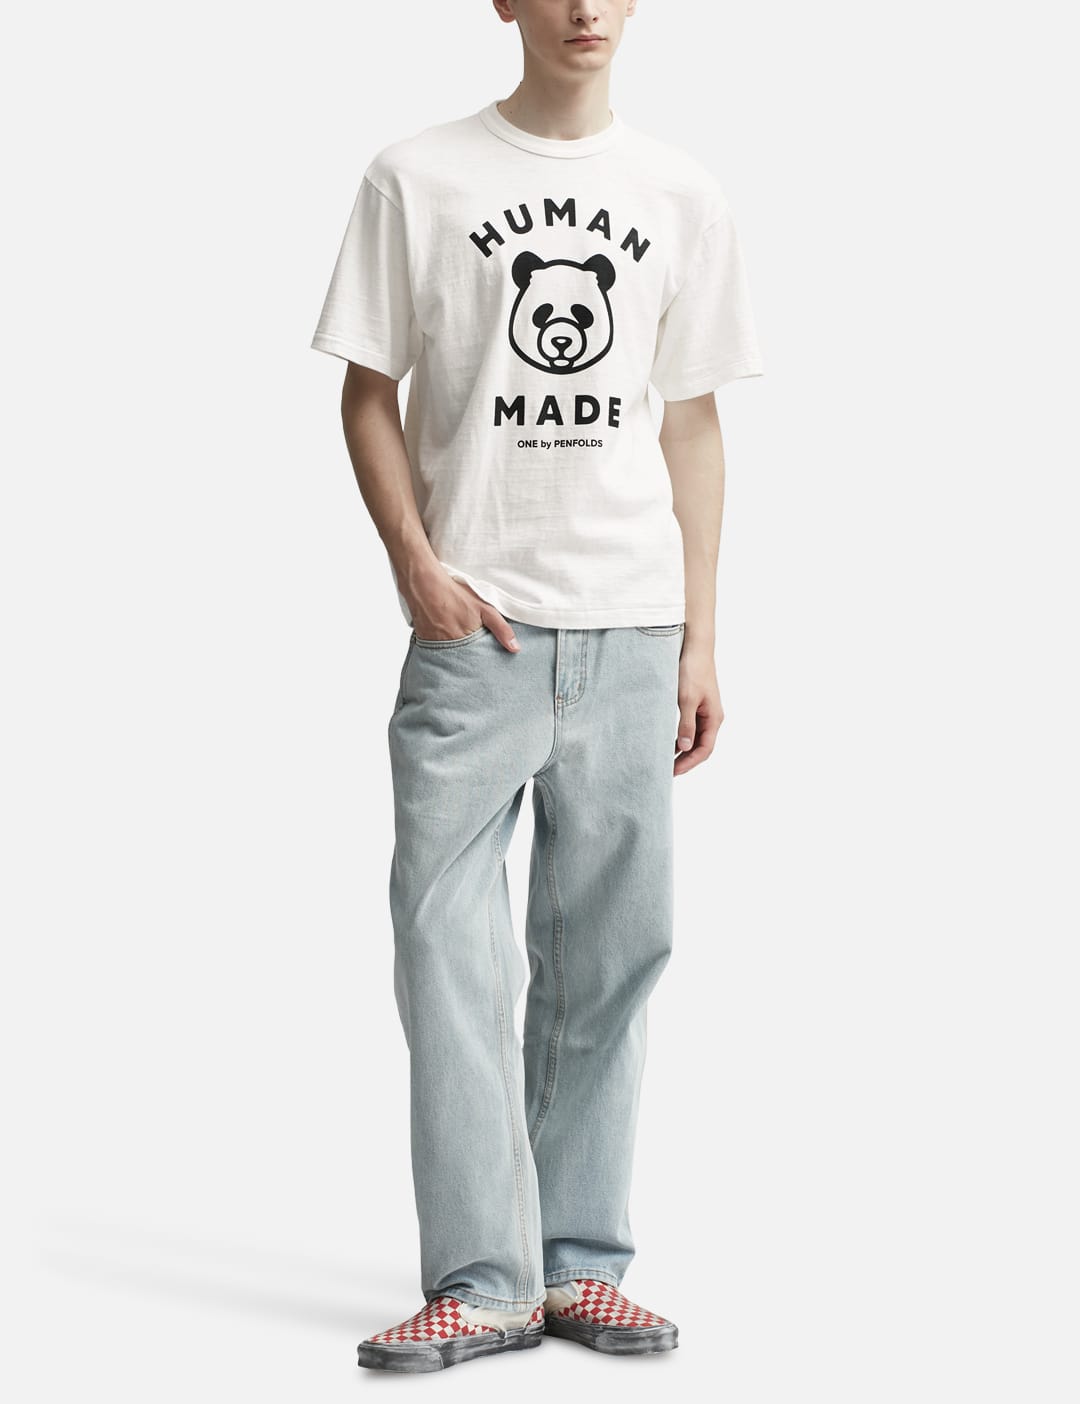 Human Made - ワン バイ ペンフォールズ パンダ Tシャツ | HBX